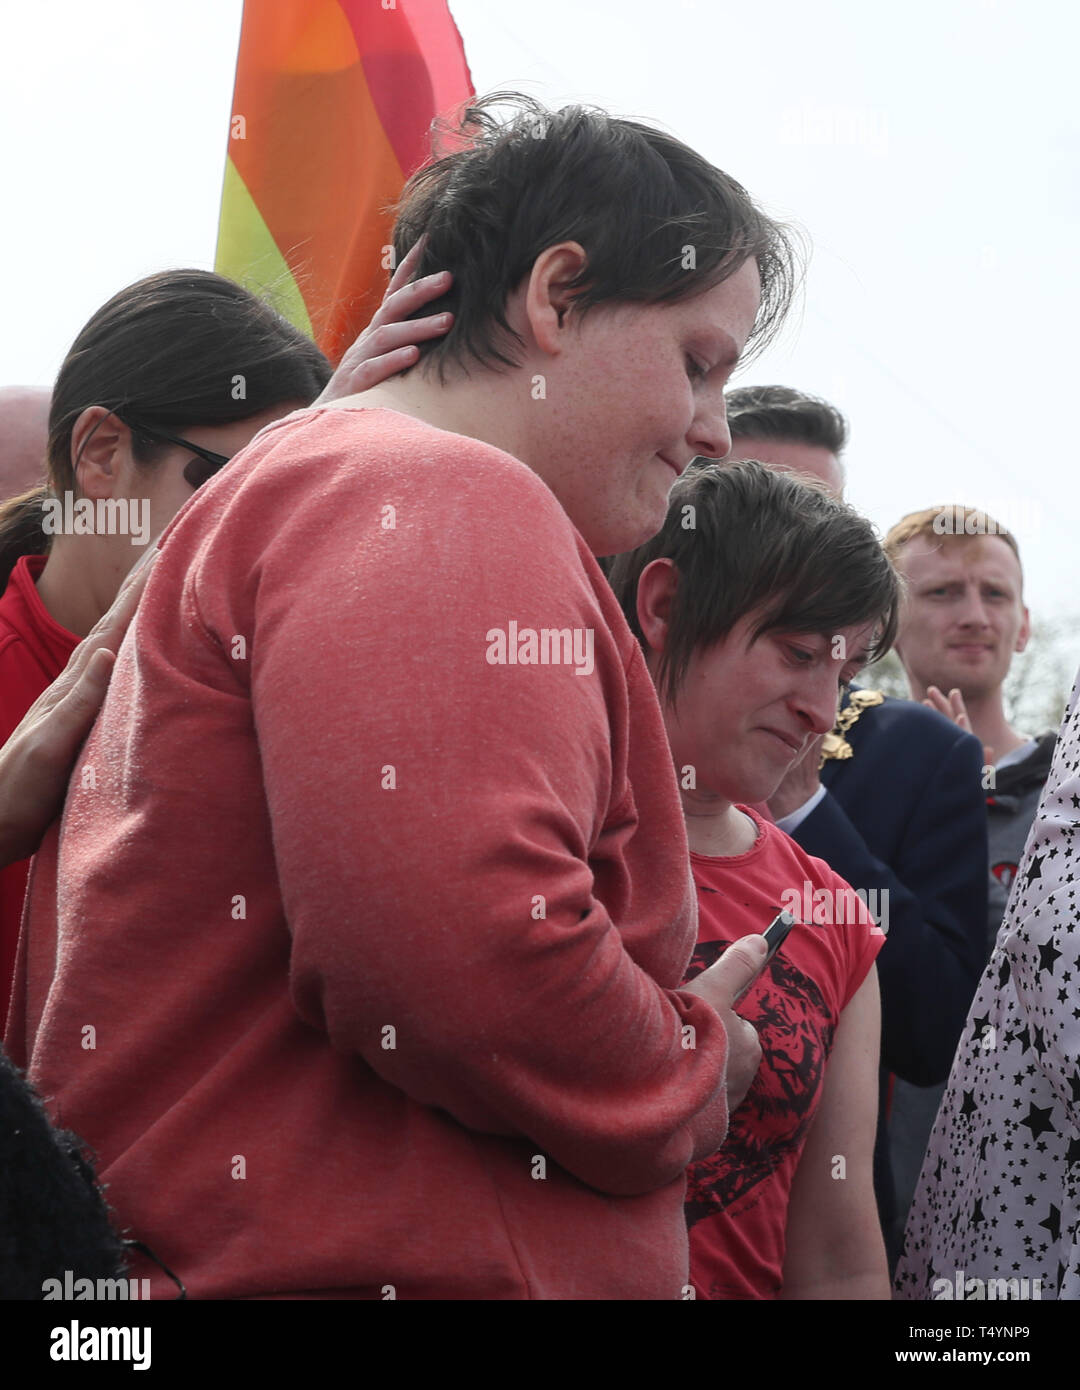 Sara Canning (sinistra), il partner di 29-anno-vecchio giornalista Lyra McKee in un rally in Londonderry, Irlanda del Nord, dopo la sua morte la scorsa notte dopo le pistole sono stati licenziati e bombe a benzina sono stati gettati in quanto forze di polizia sono trattare come un "episodio di terrorismo". Foto Stock